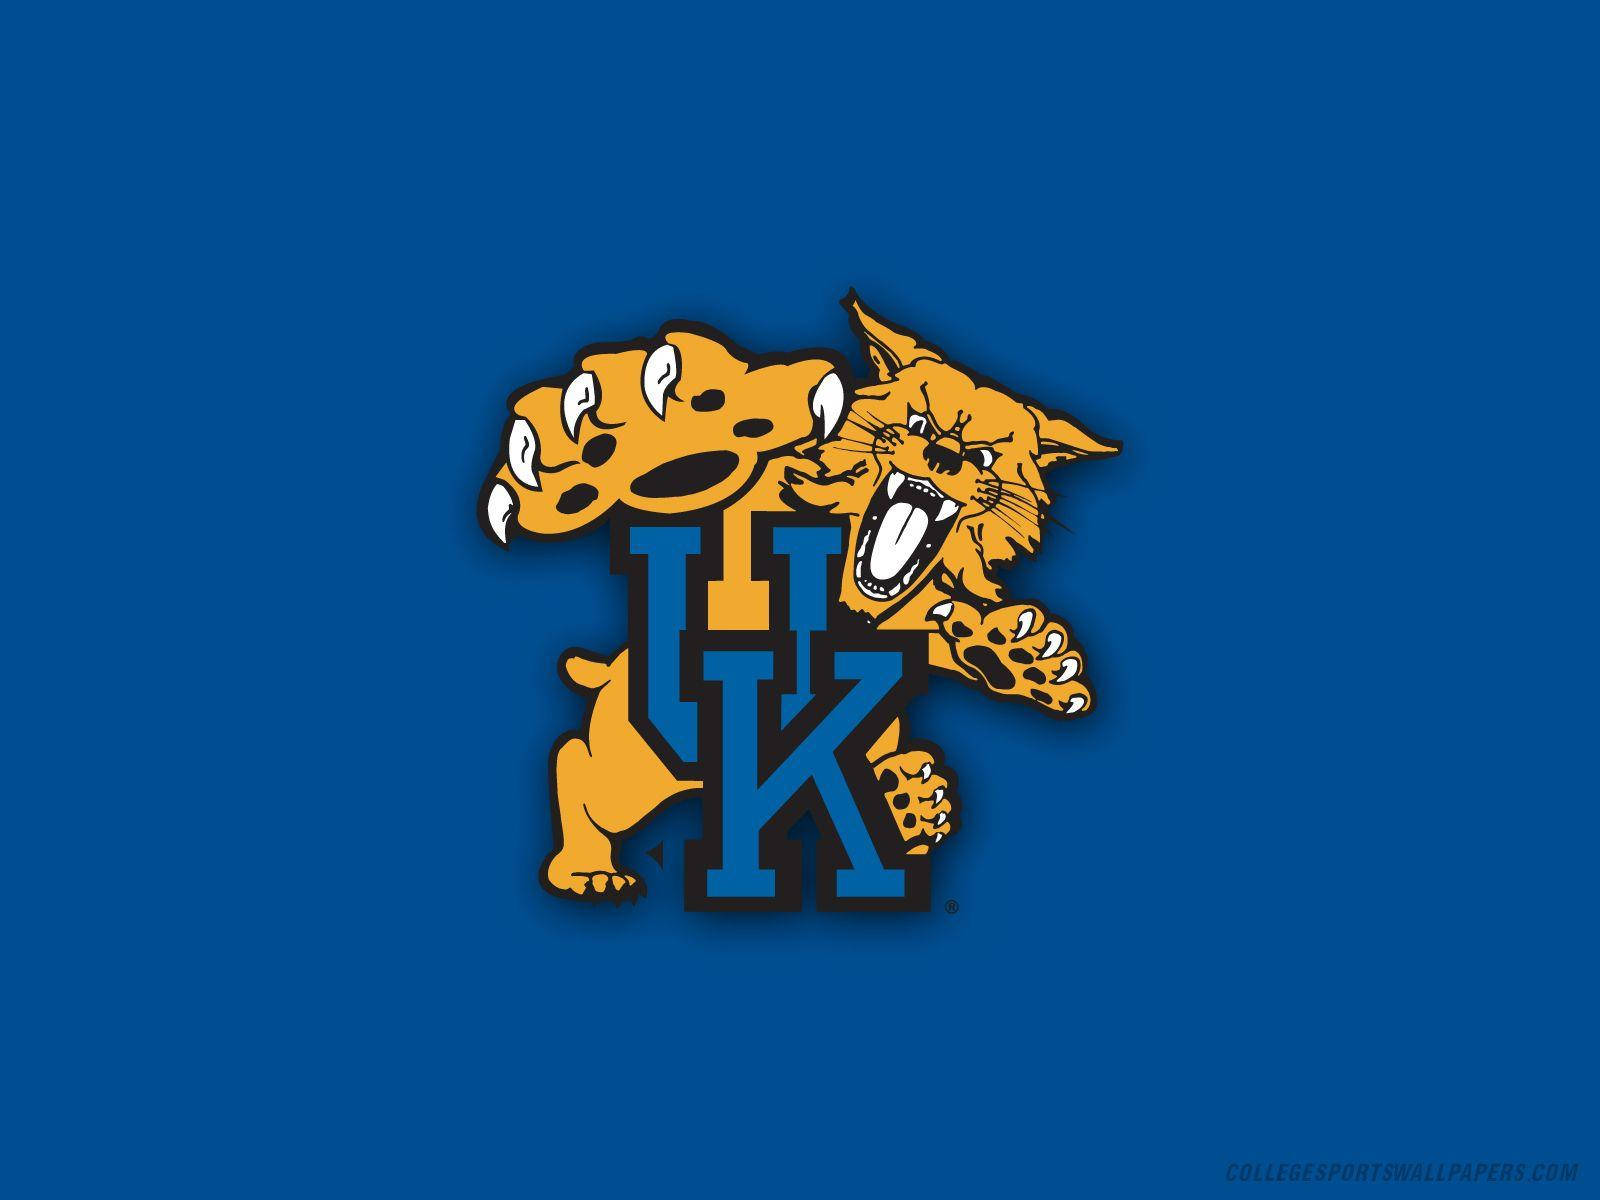 Blåbakgrund Kentucky Wildcats. Wallpaper